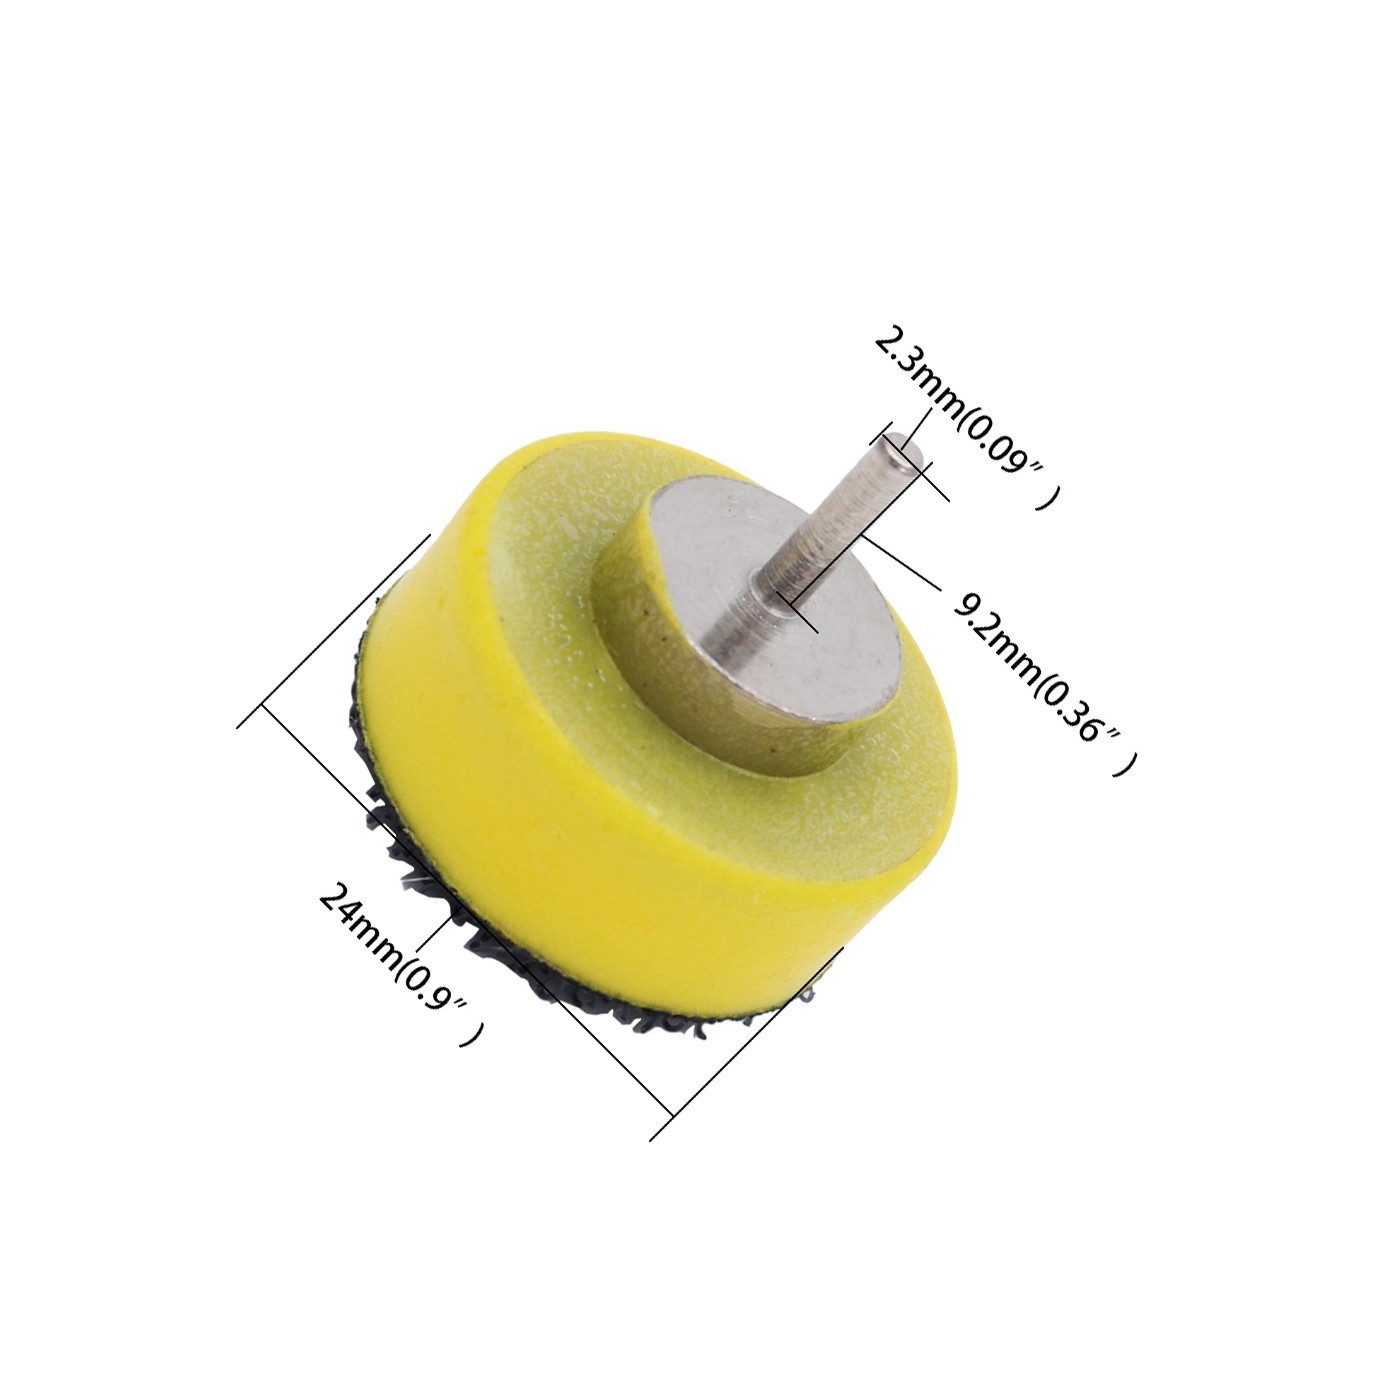 Soporte de disco abrasivo de 25 mm de ancho (gancho y bucle)